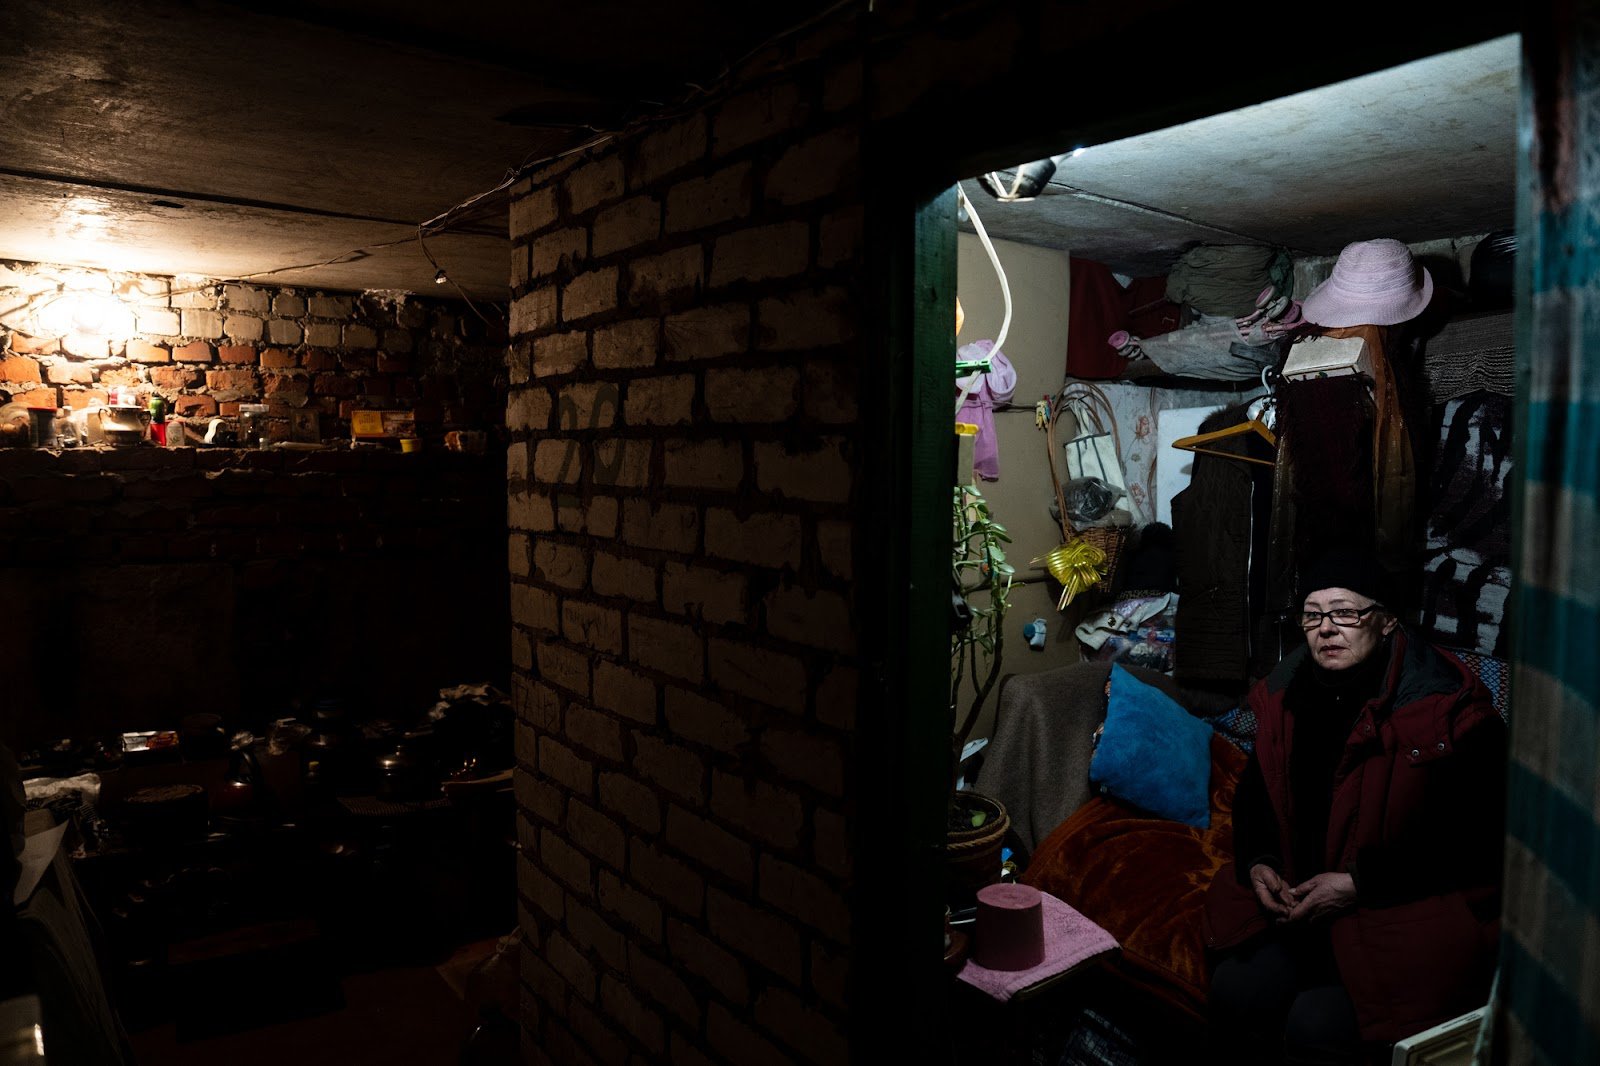 Жінка, яка переселилася до підвалу. Її житло зруйноване. Фото: Станіслав Стрілець, Wolfgang Schwan